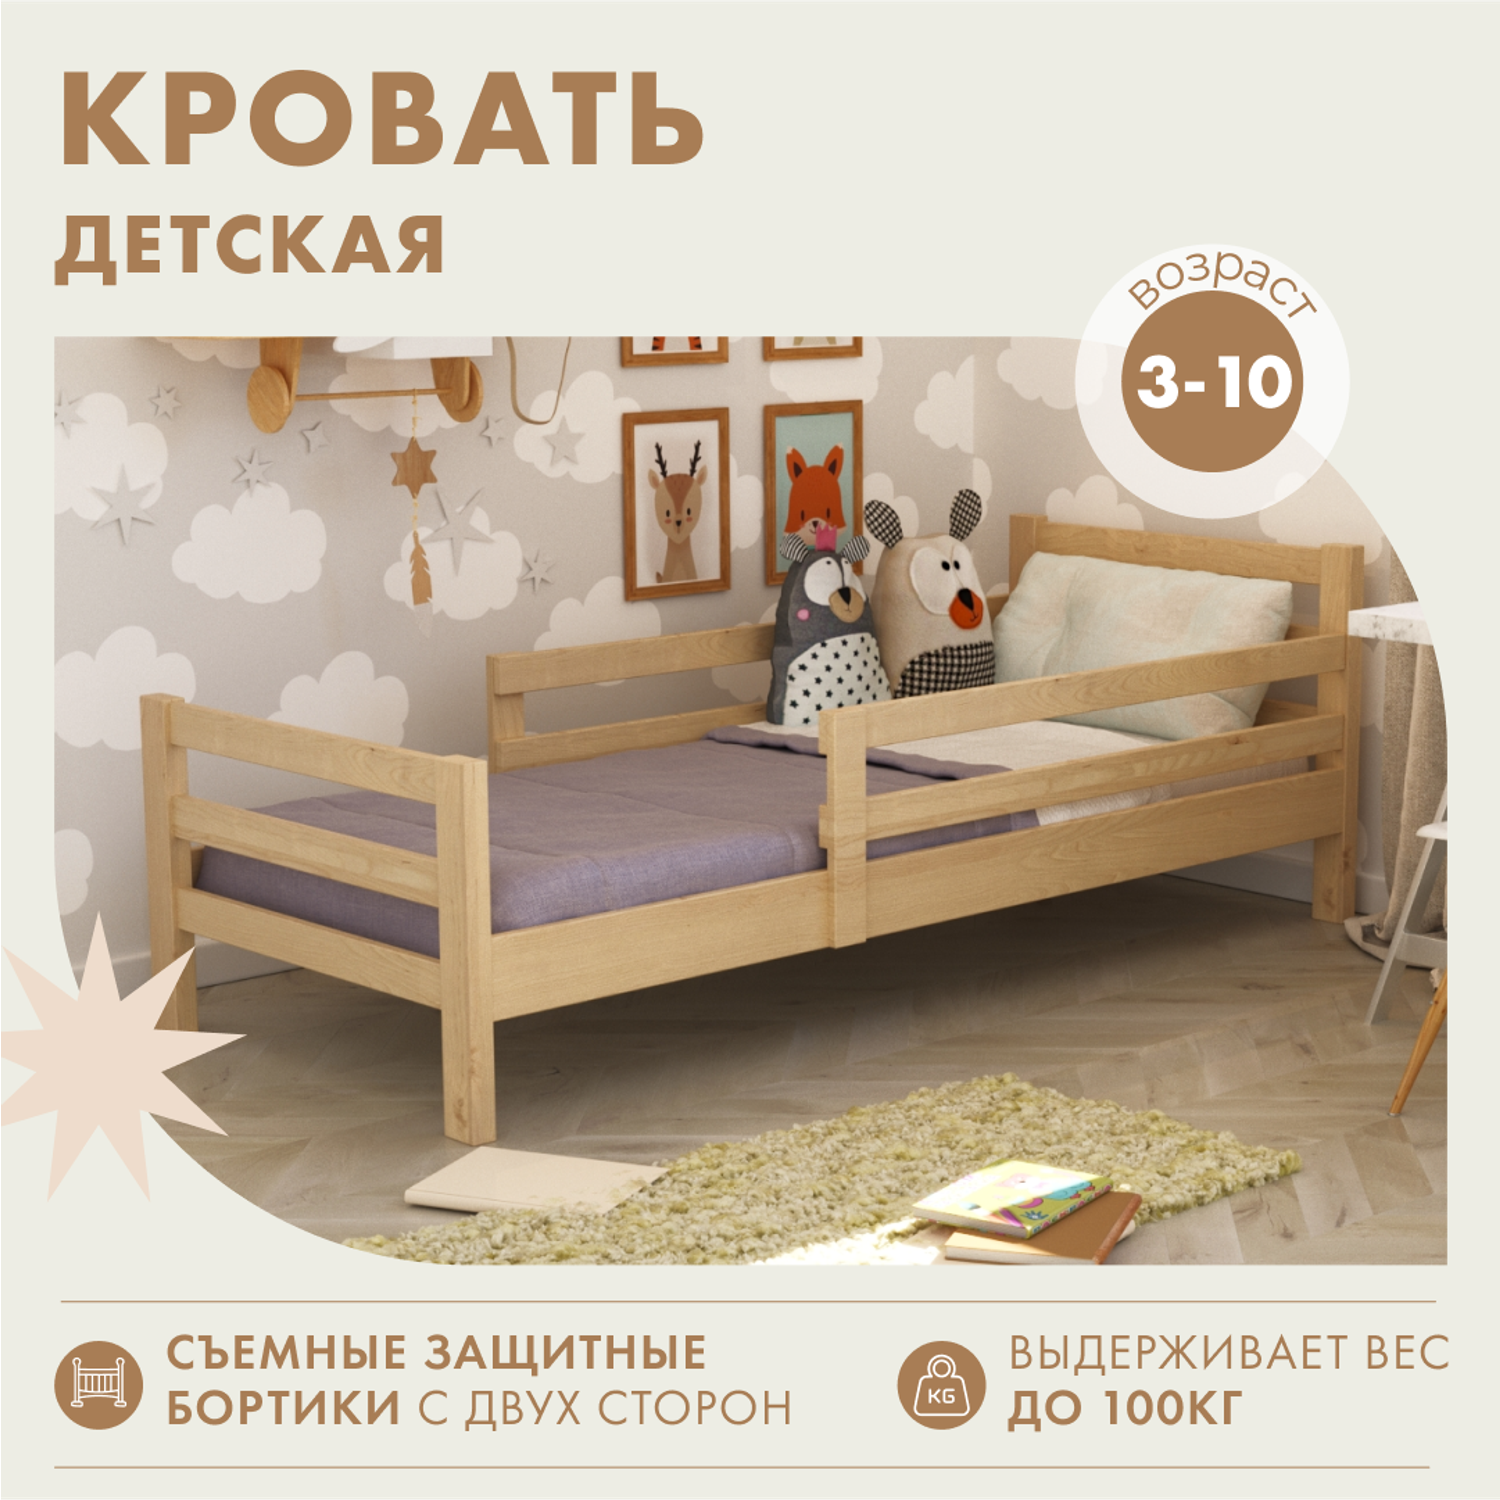 Детские кровати оптом в Москве